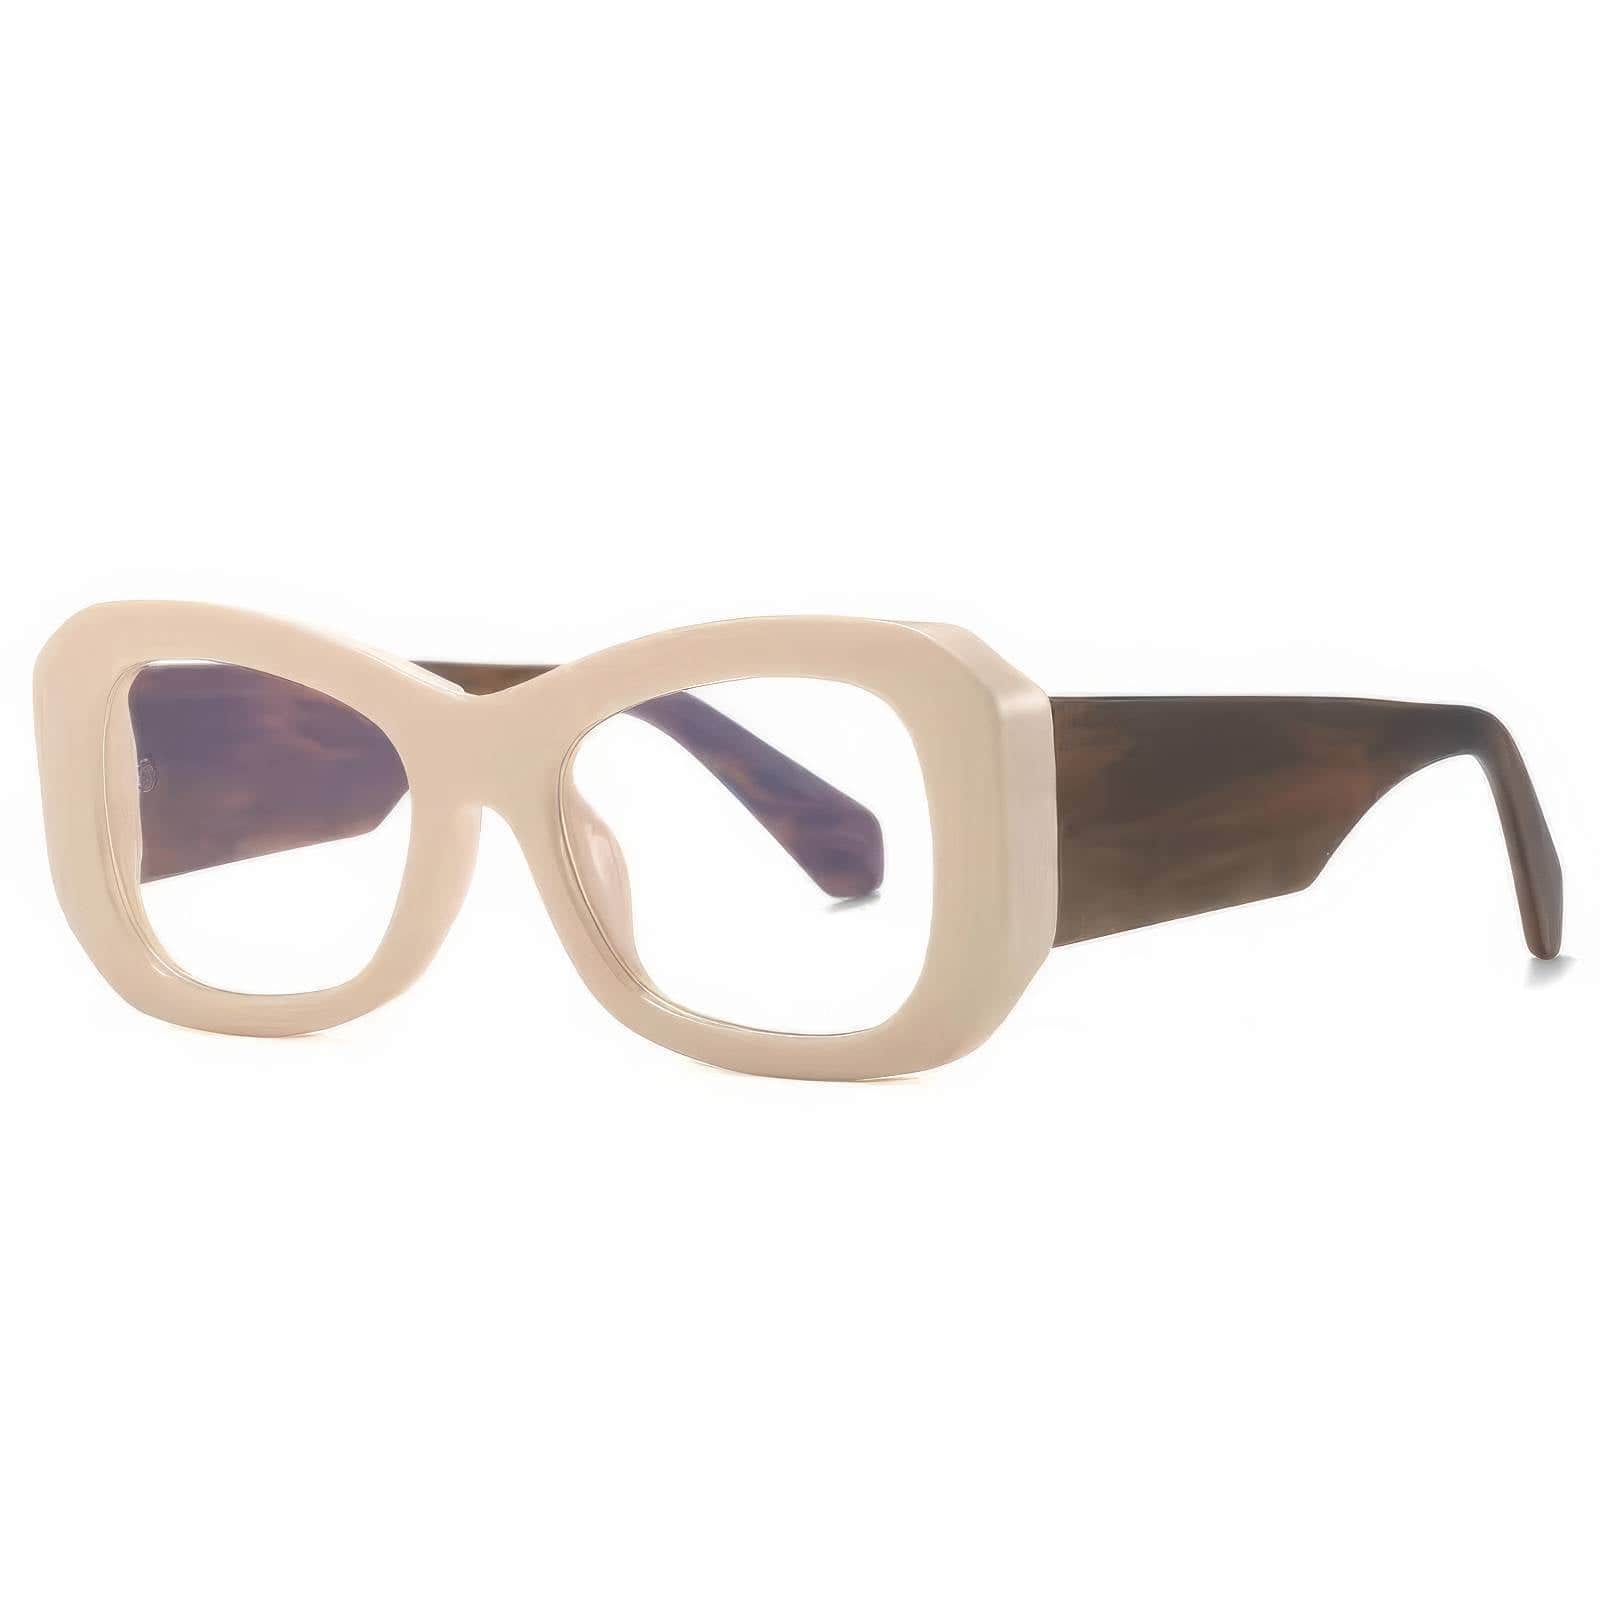 Funky Trending Square Sunglasses Ivory/White / Resin